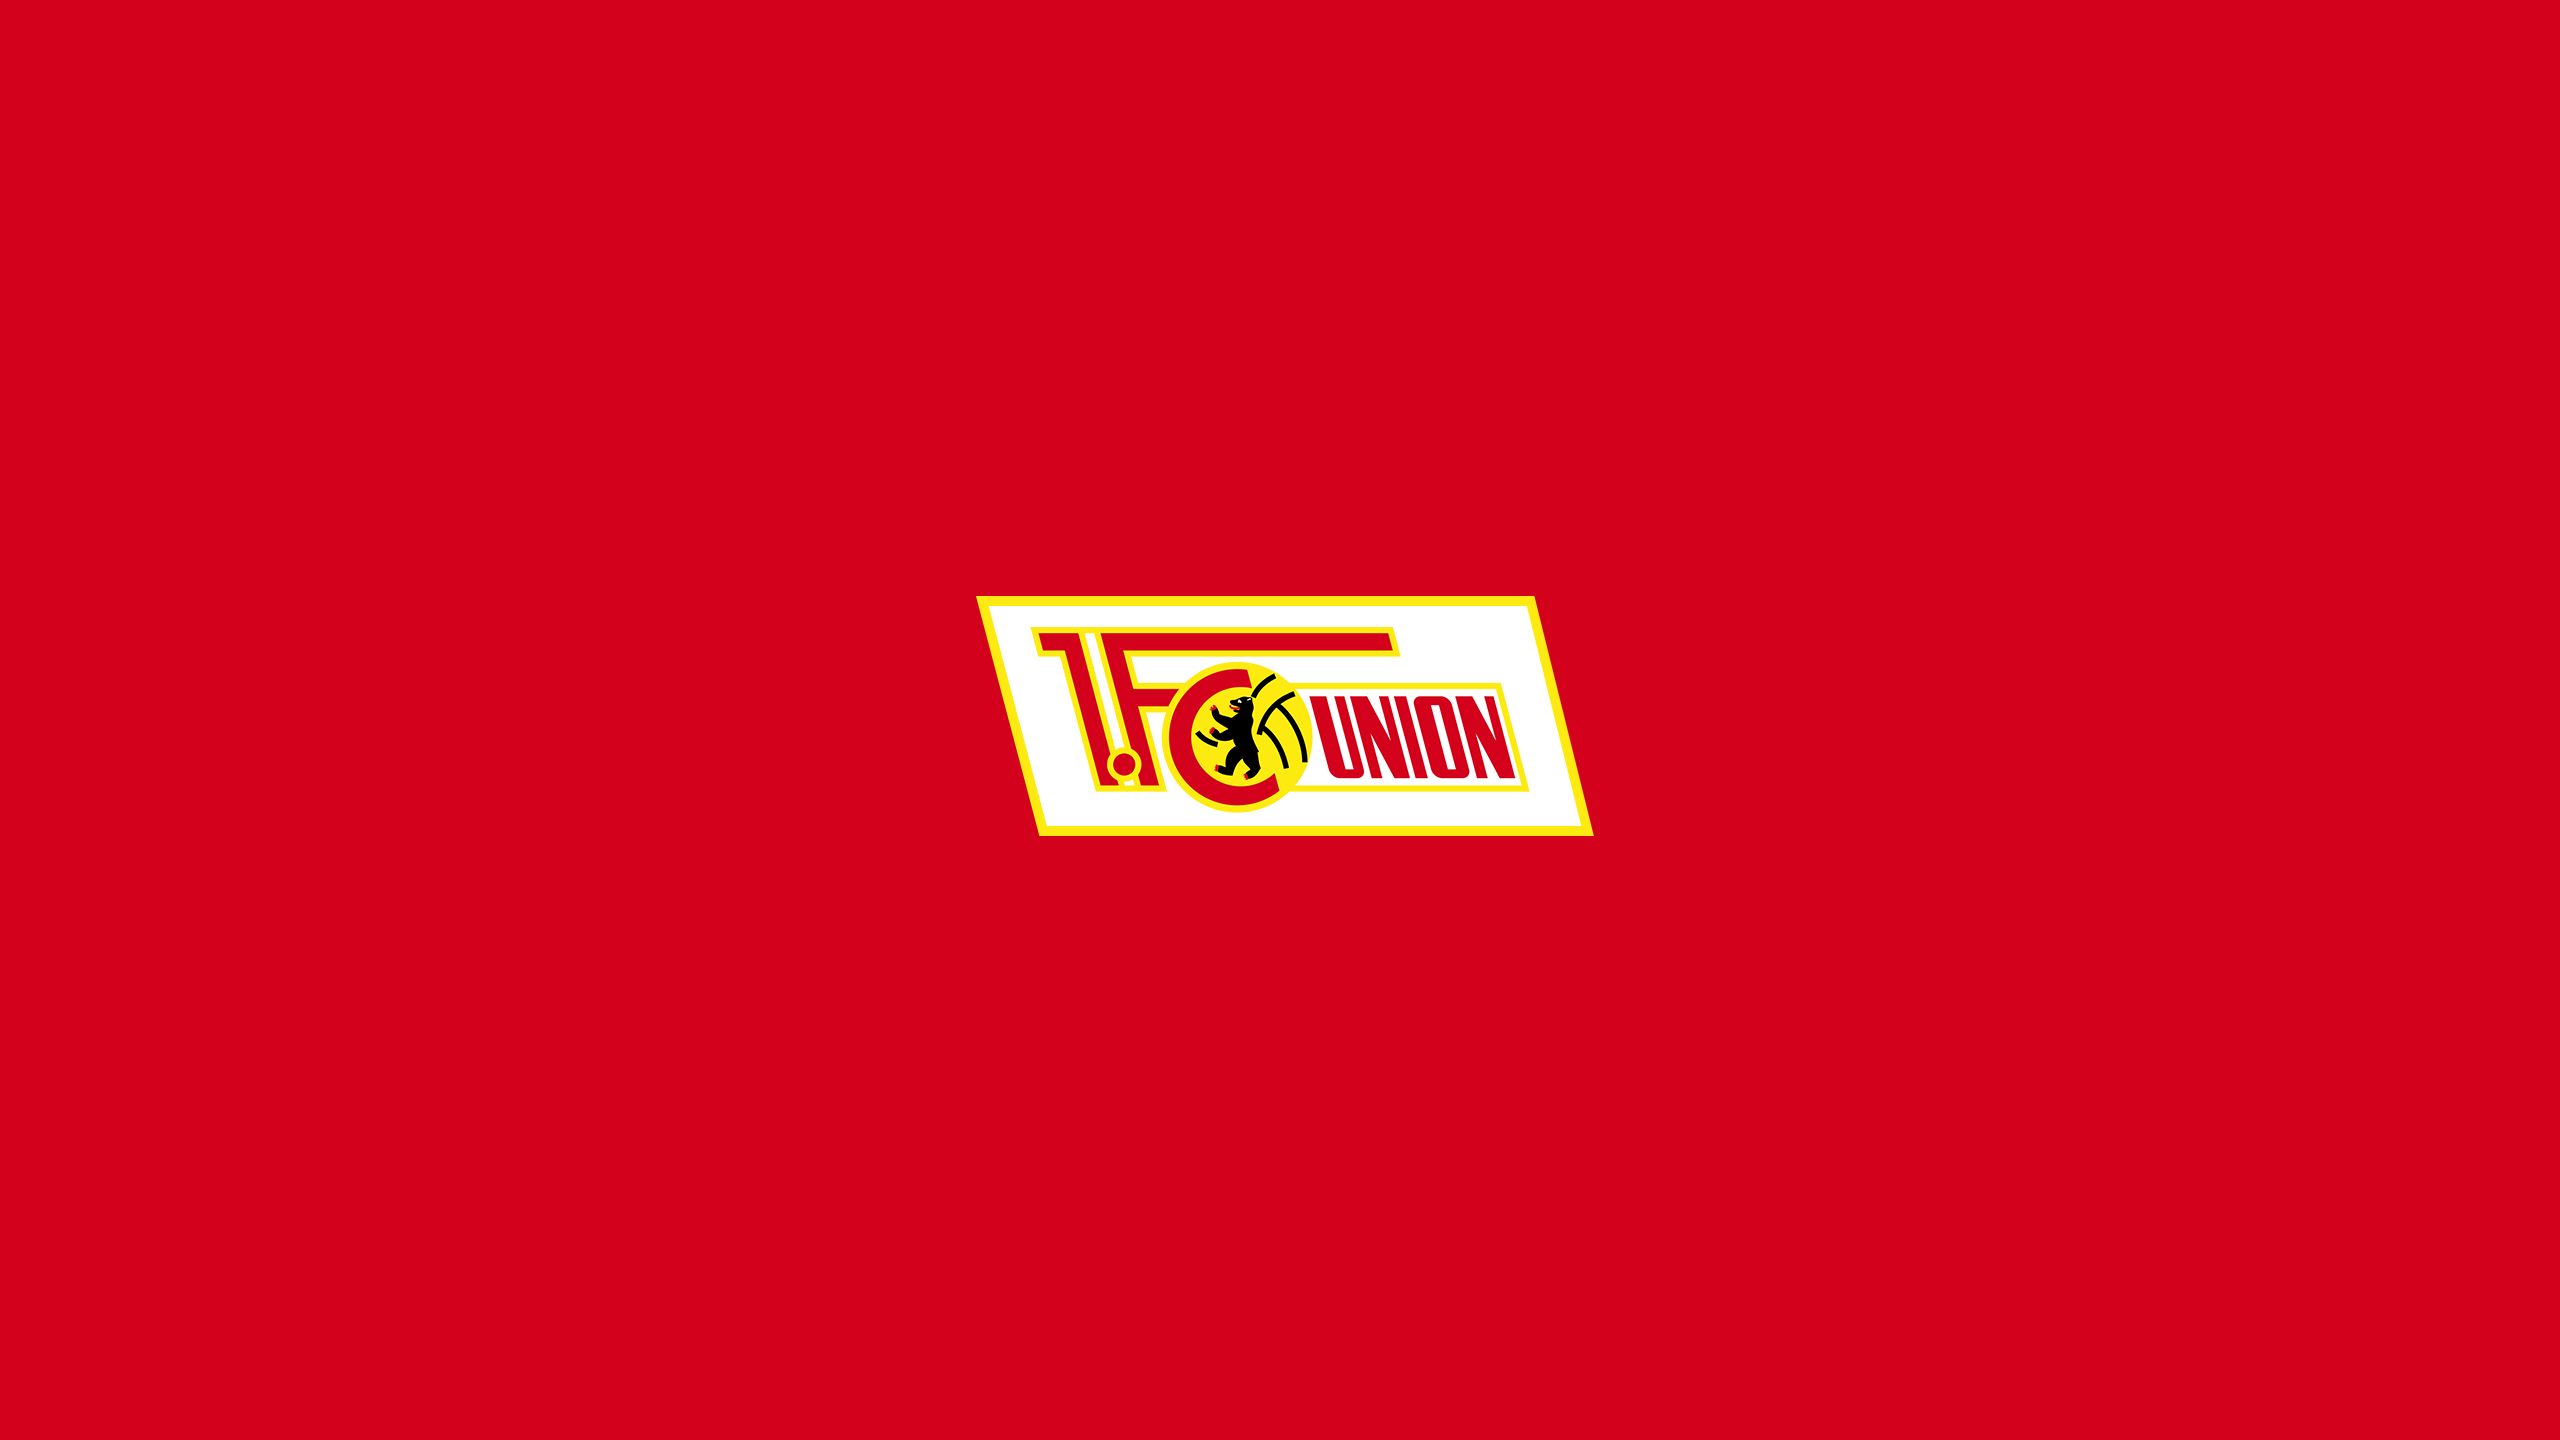 Descarga gratuita de fondo de pantalla para móvil de Fútbol, Logo, Emblema, Deporte, 1 Fc Unión Berlín.